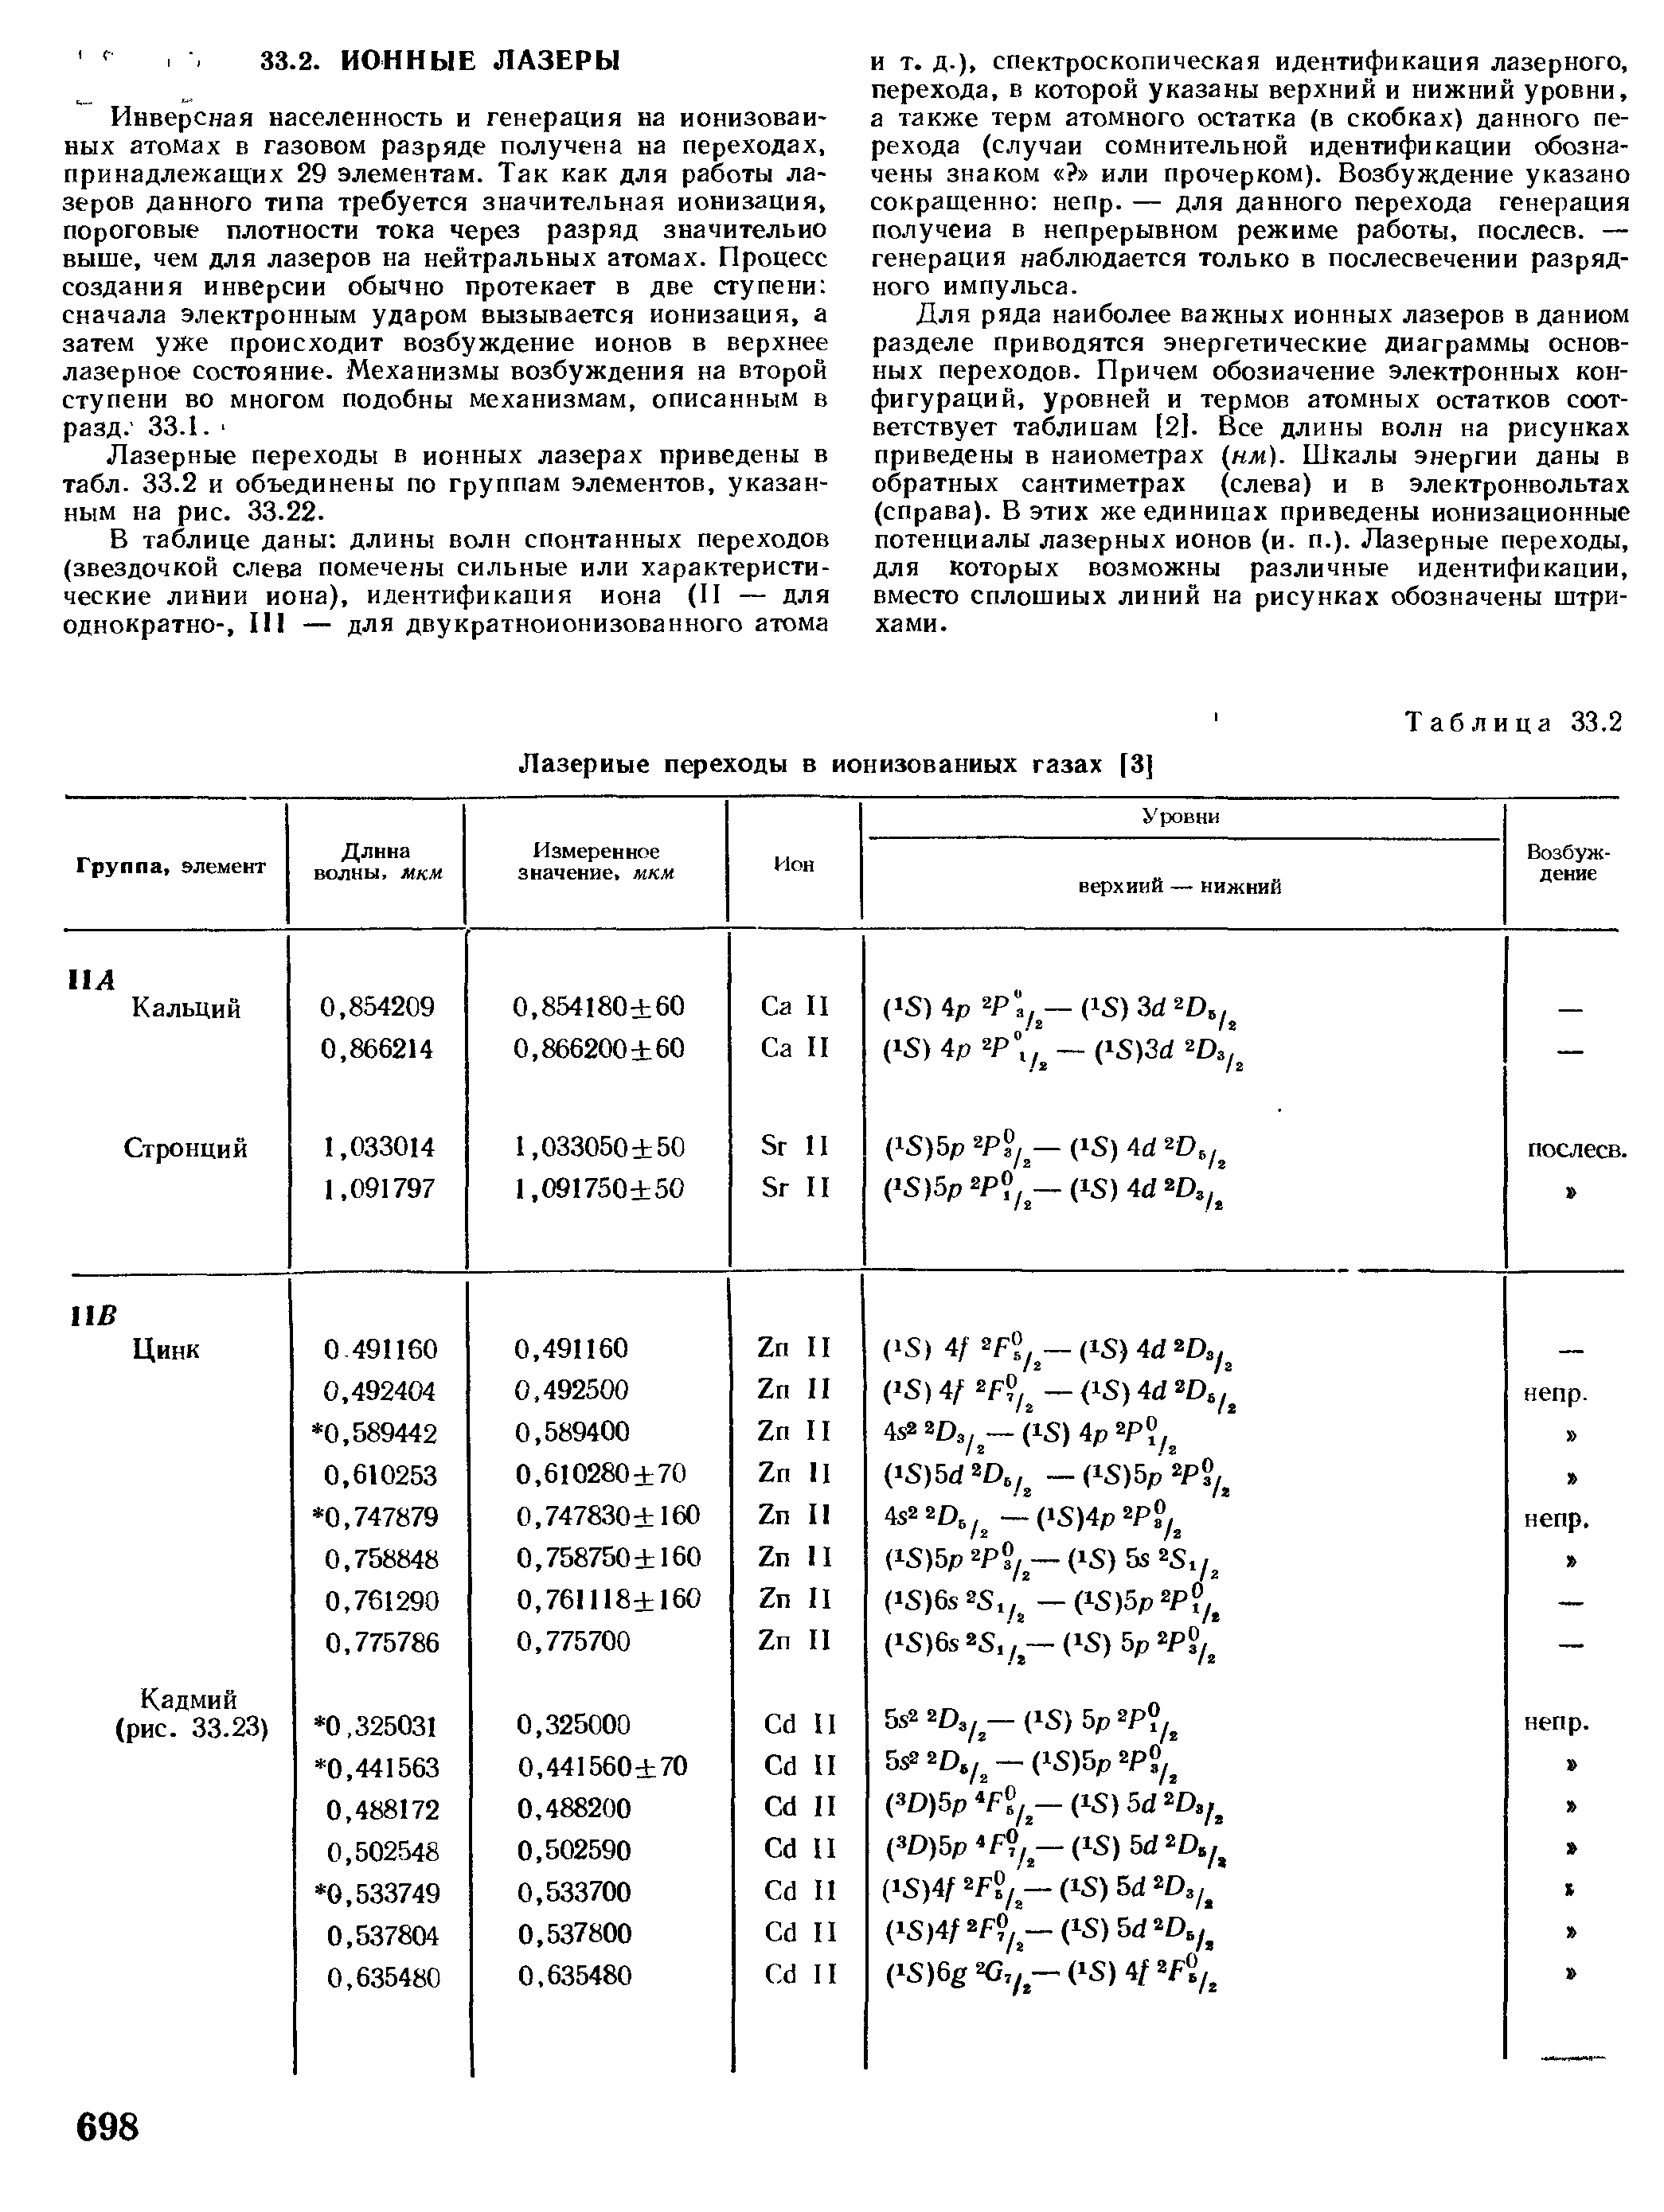 Лазерные переходы в ионных лазерах приведены в табл. 33.2 и объединены по группам элементов, указанным на рис. 33.22.
